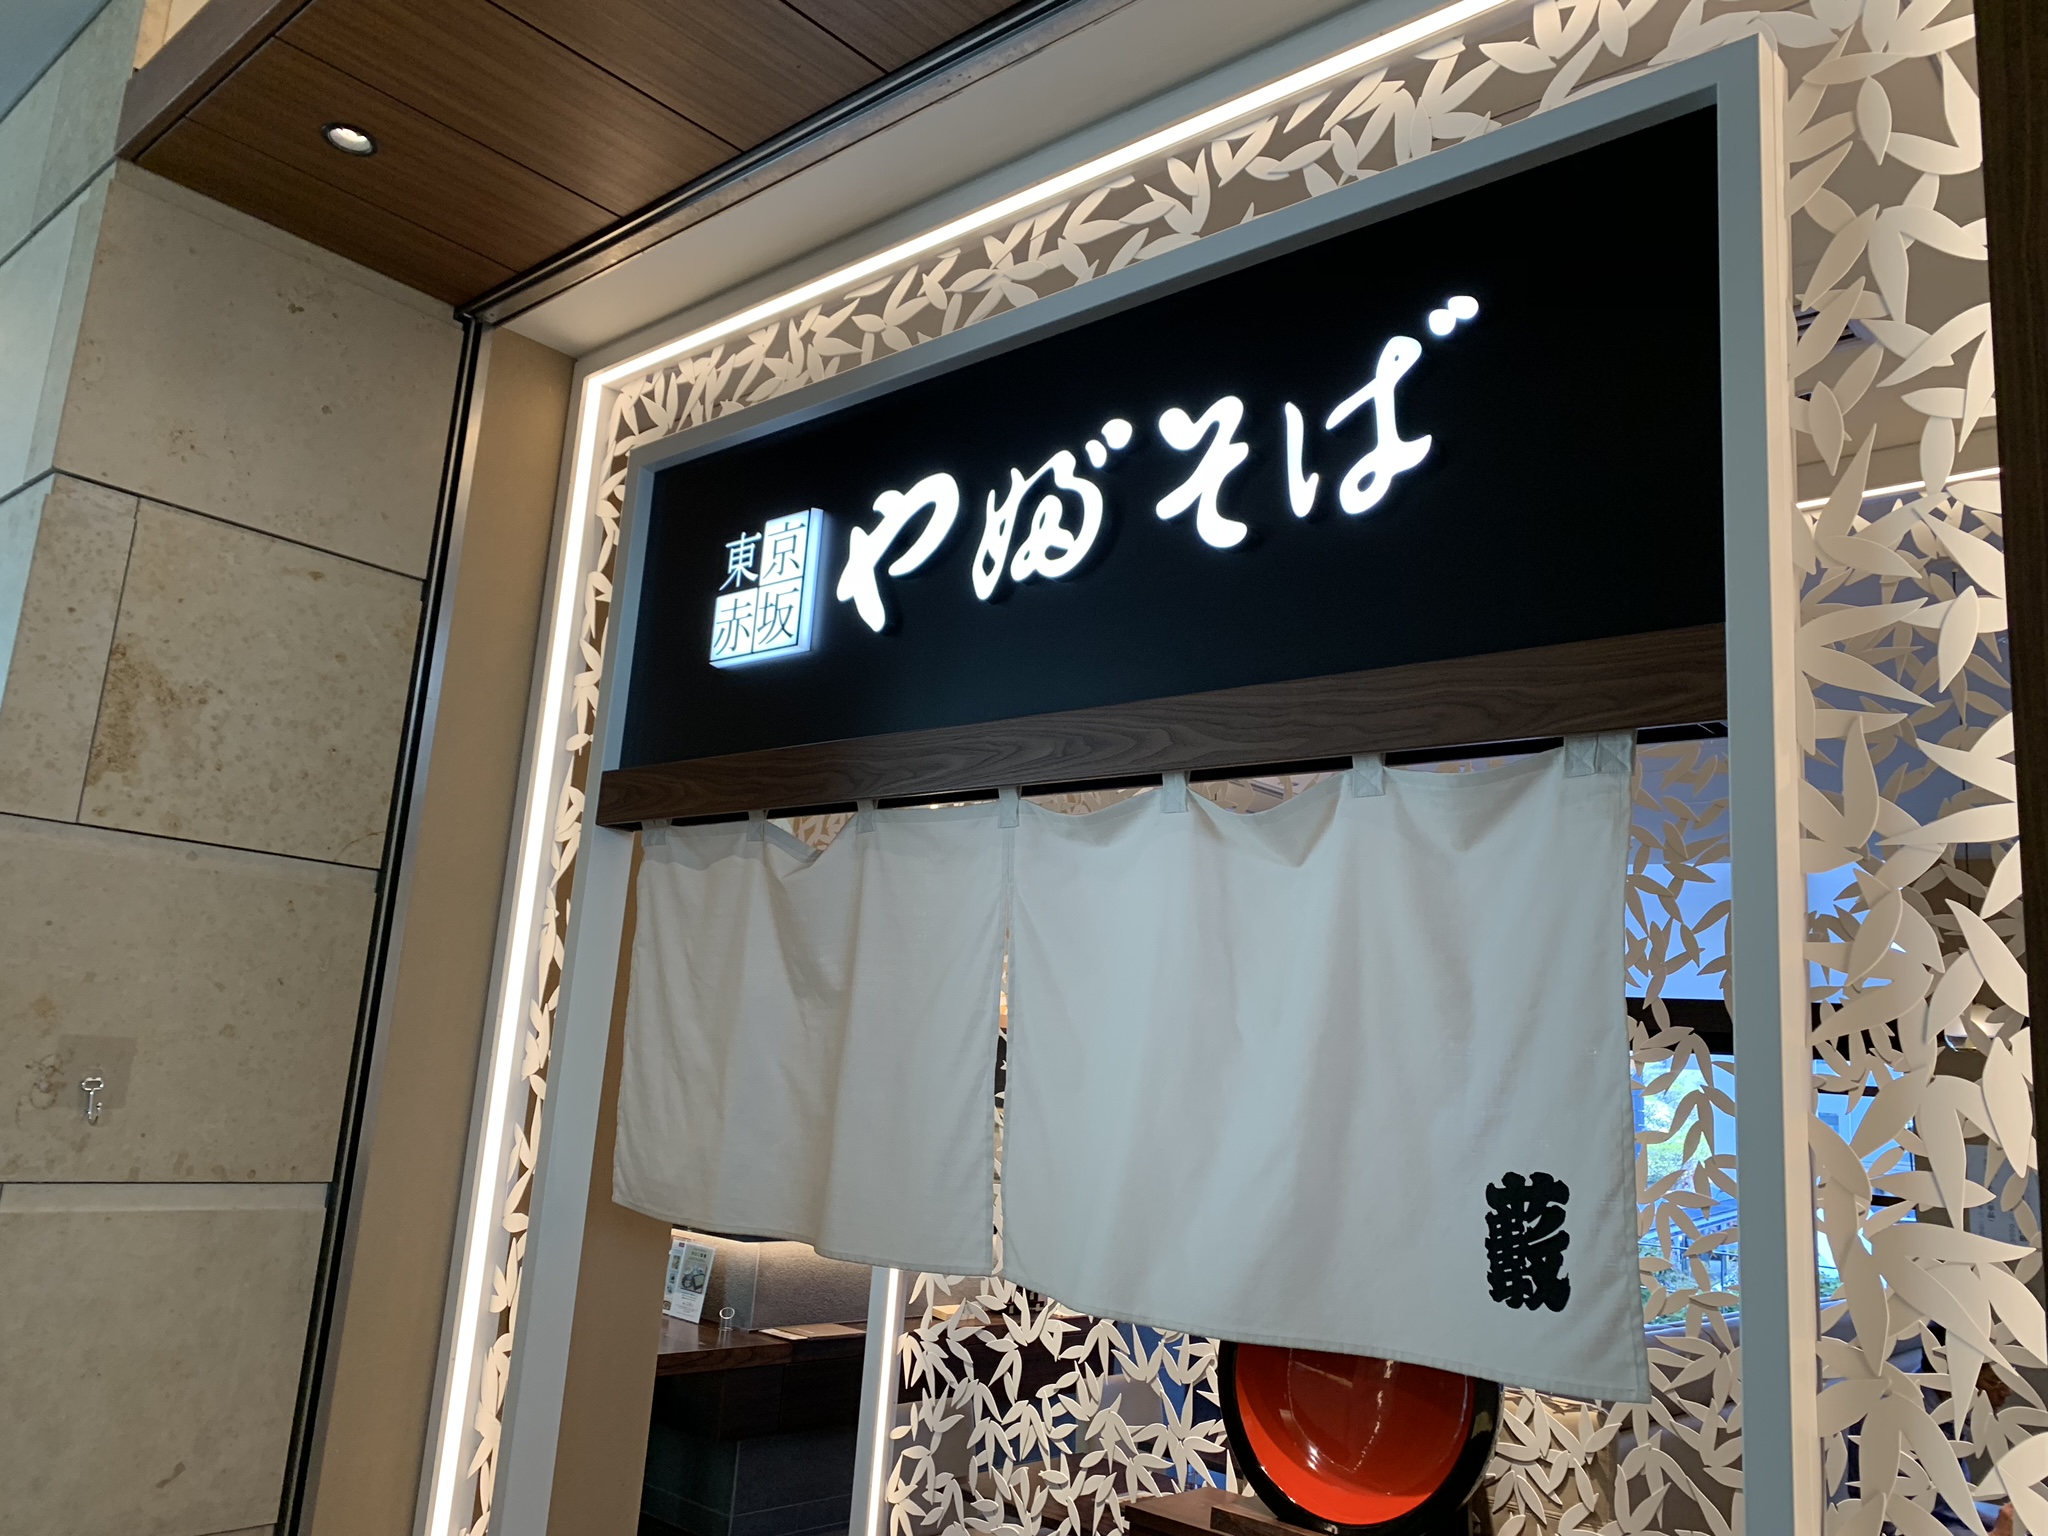 漬け料理フェア「マリネの誘惑」【東京赤坂やぶそば】のメニューは